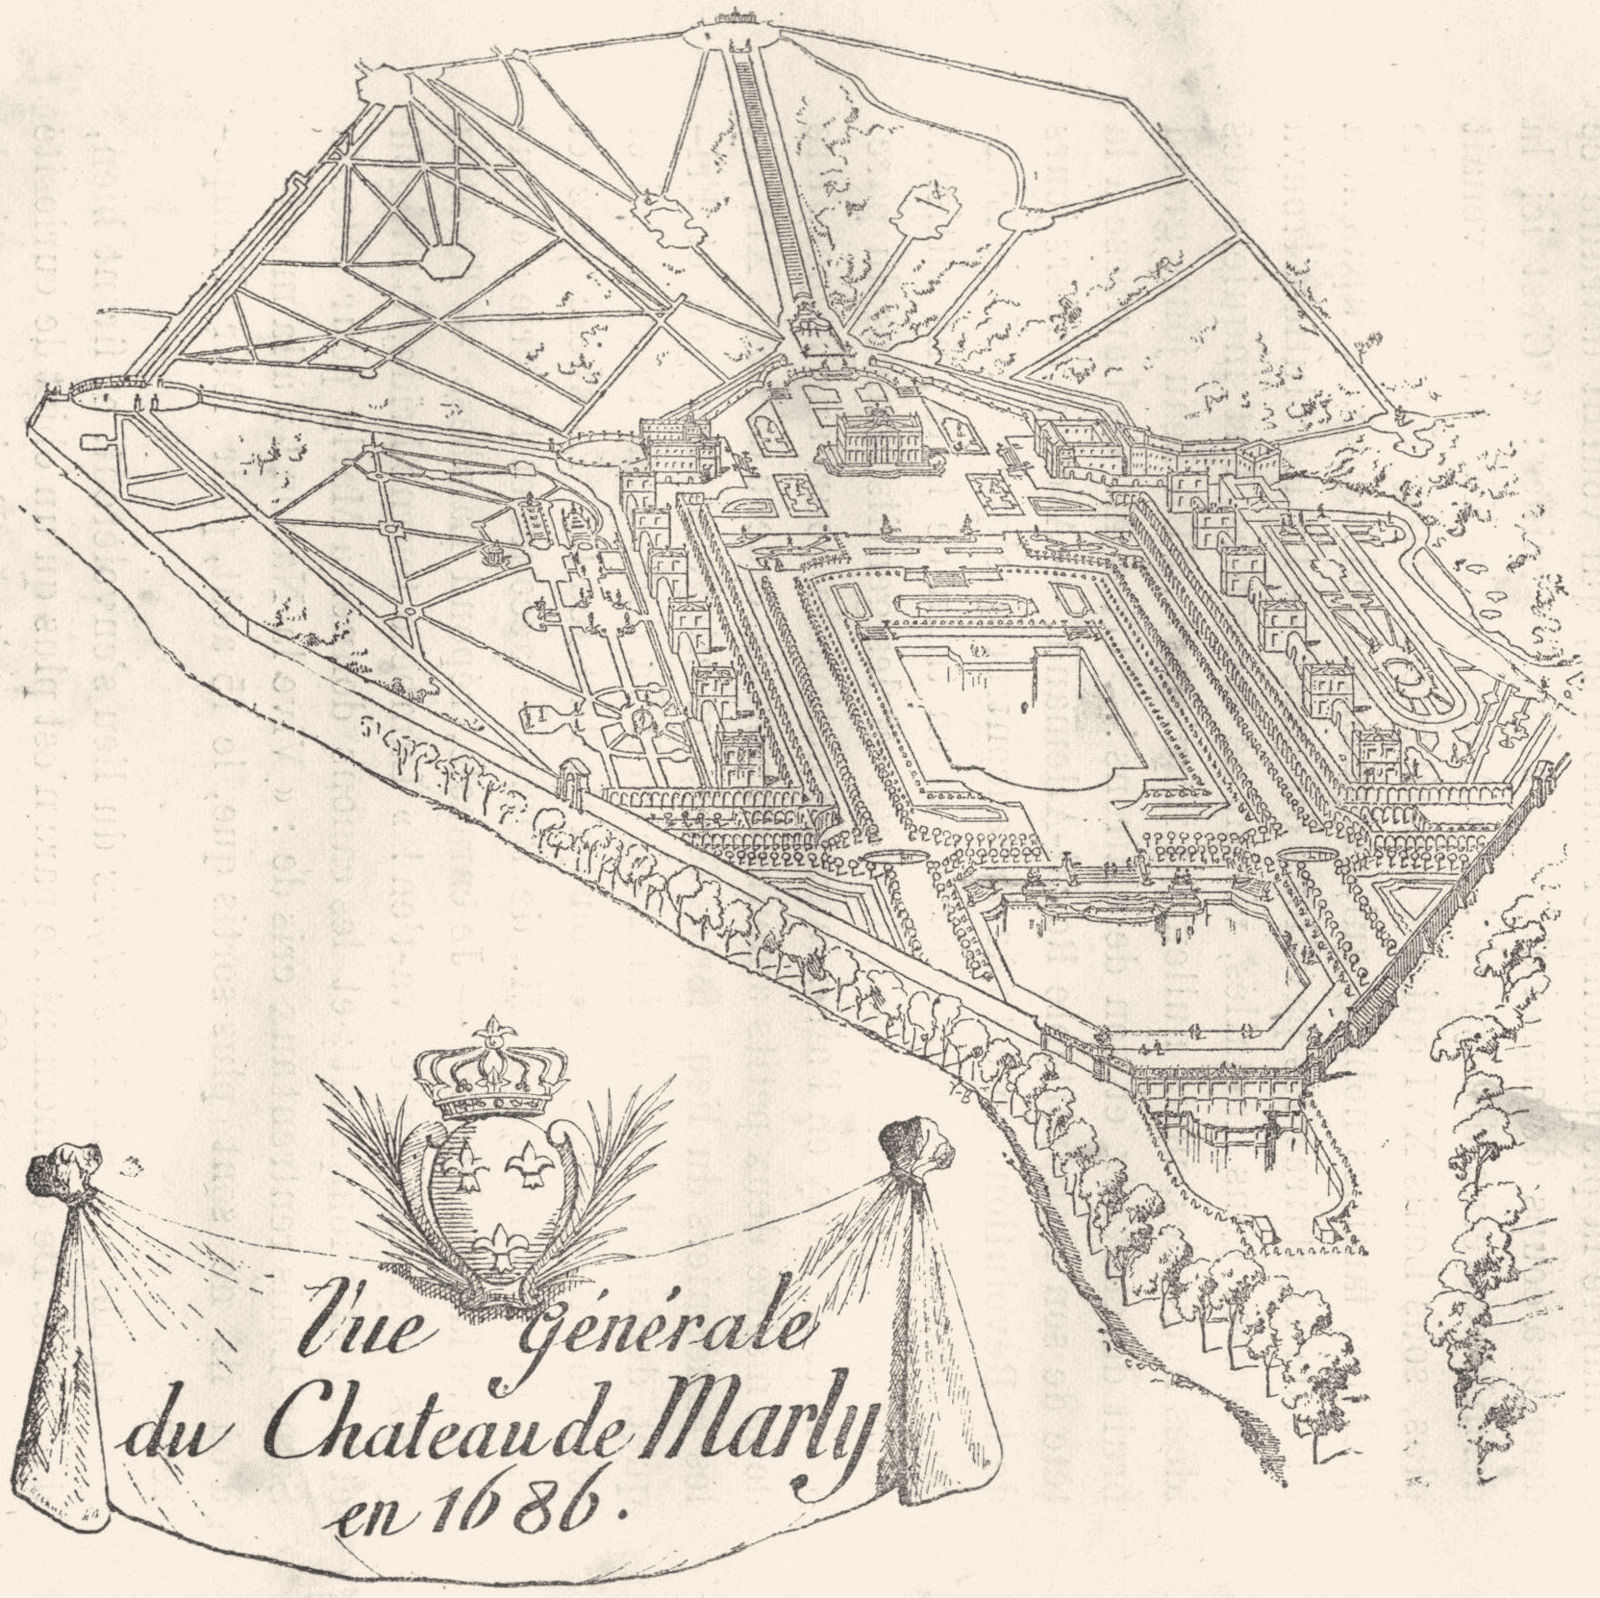 YVELINES. The generale du Chateau de Marly en 1686 1880 old antique print